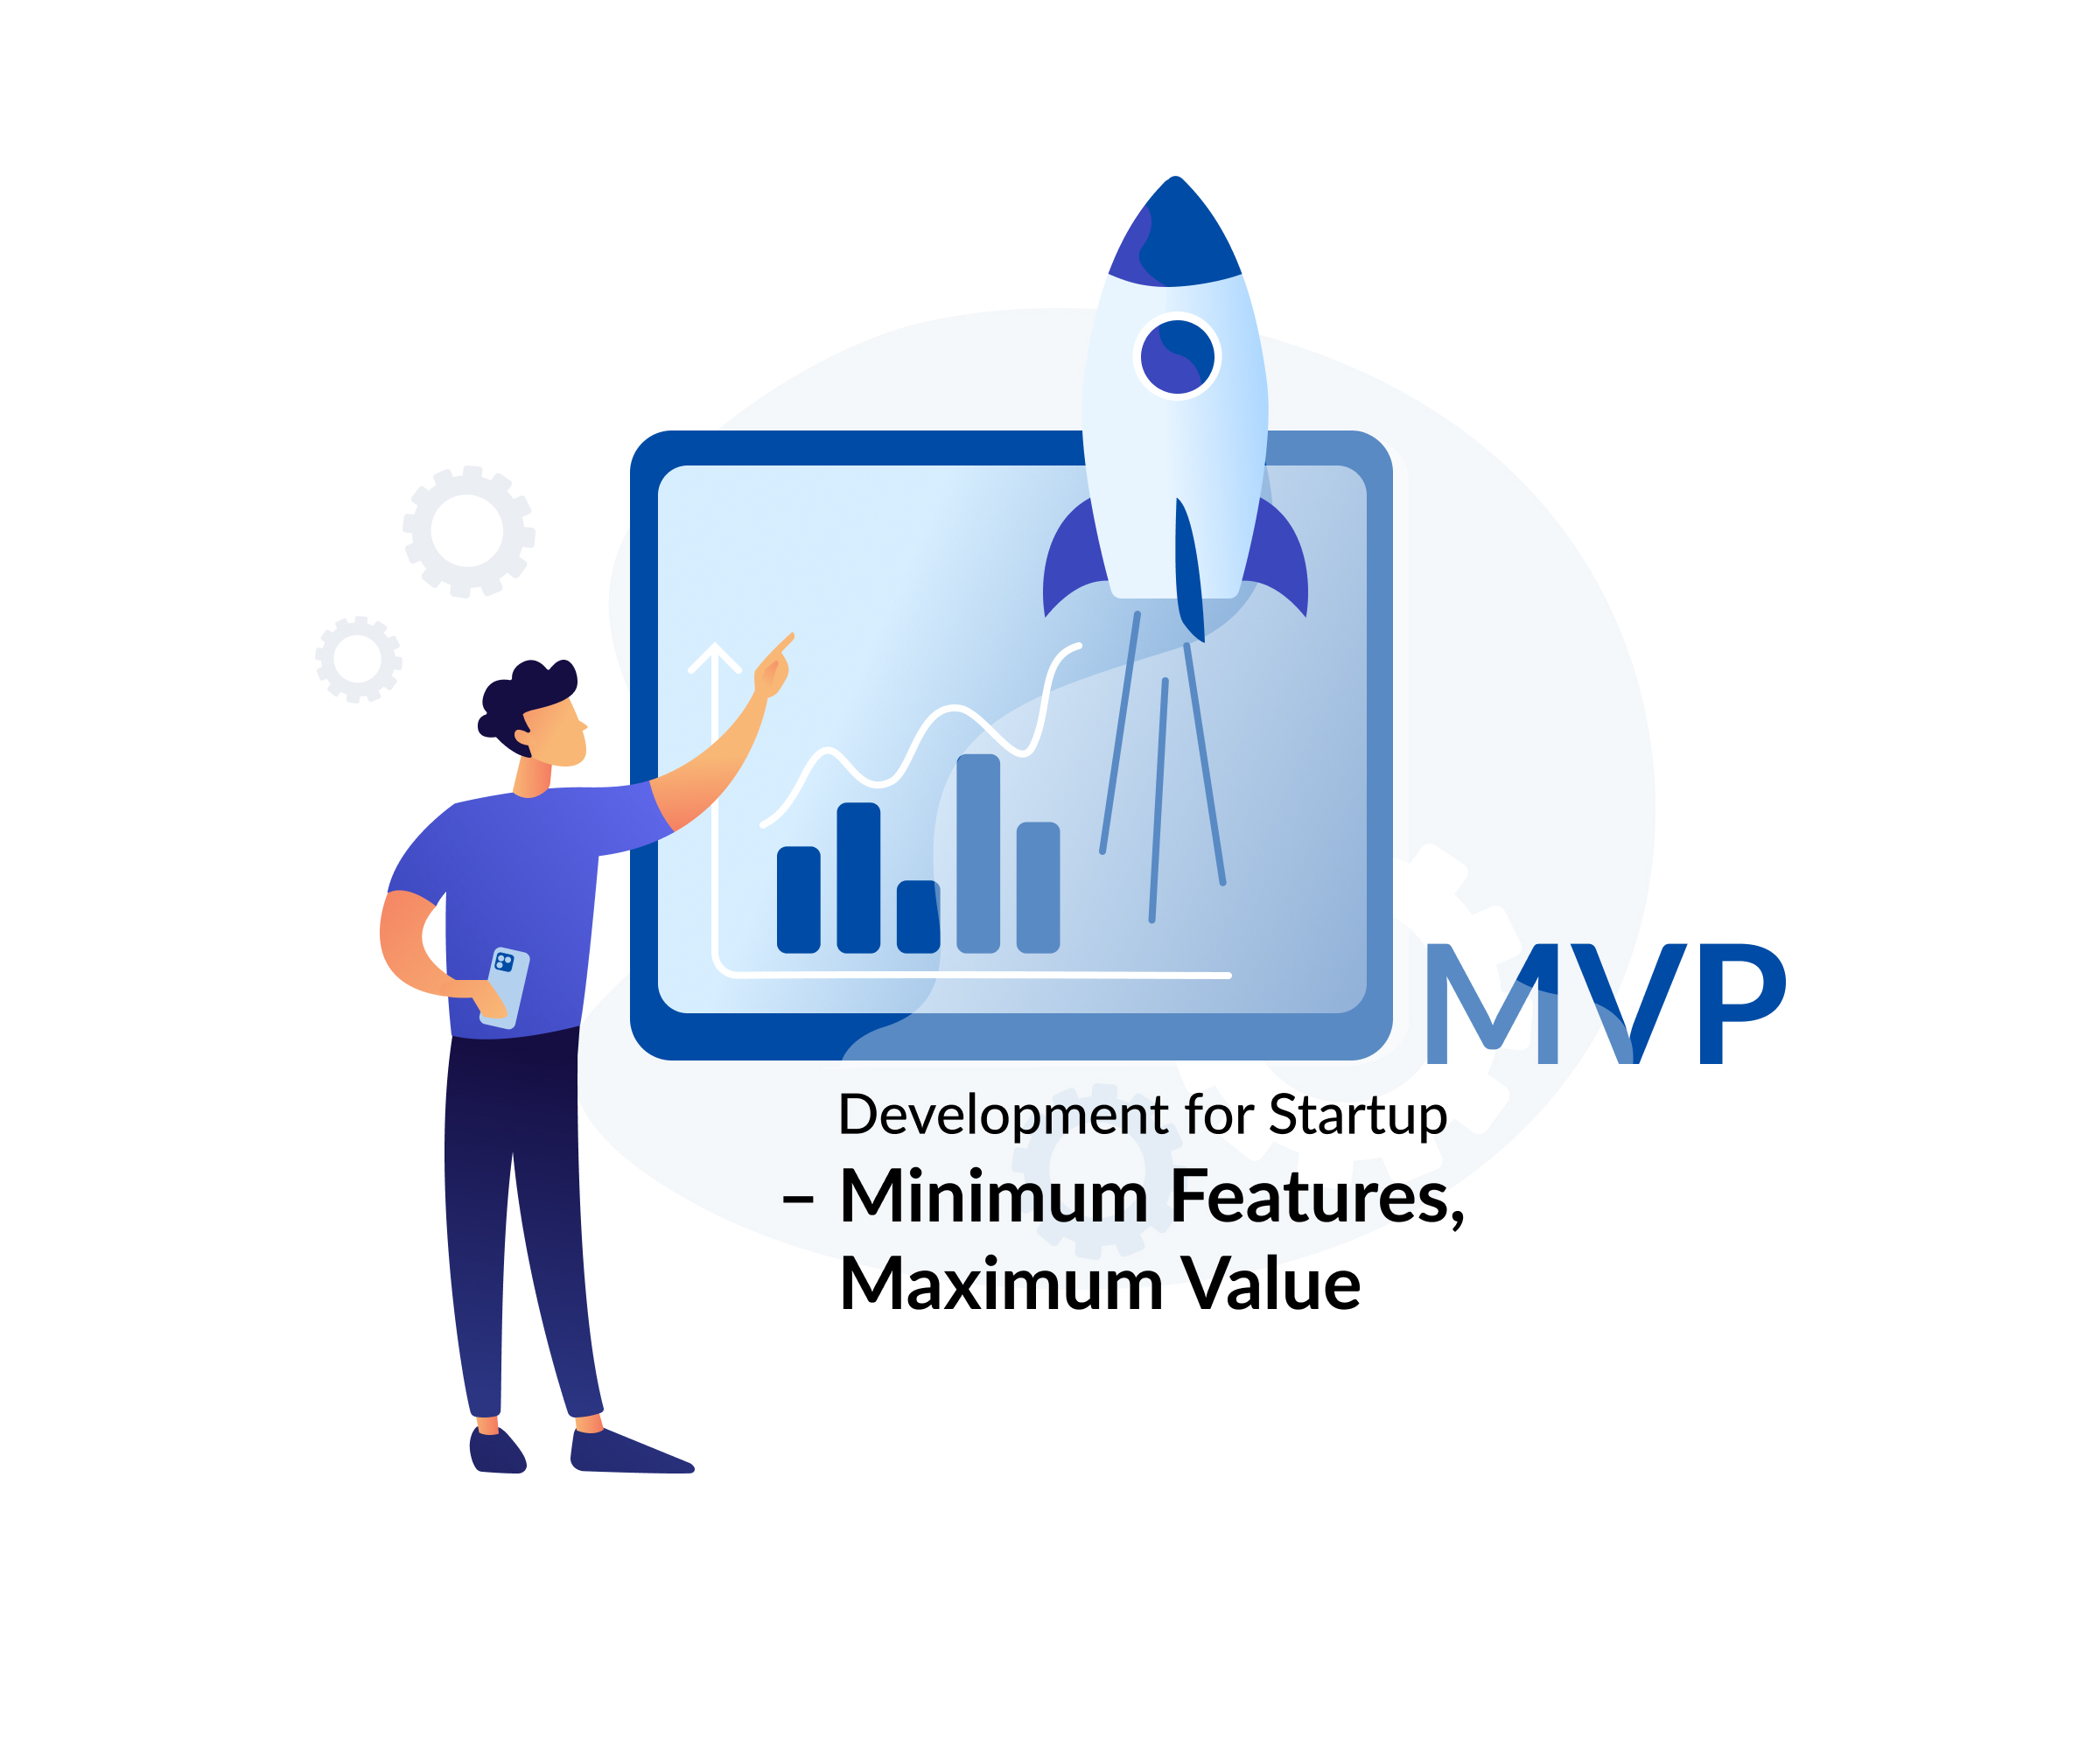 mvp development for startup